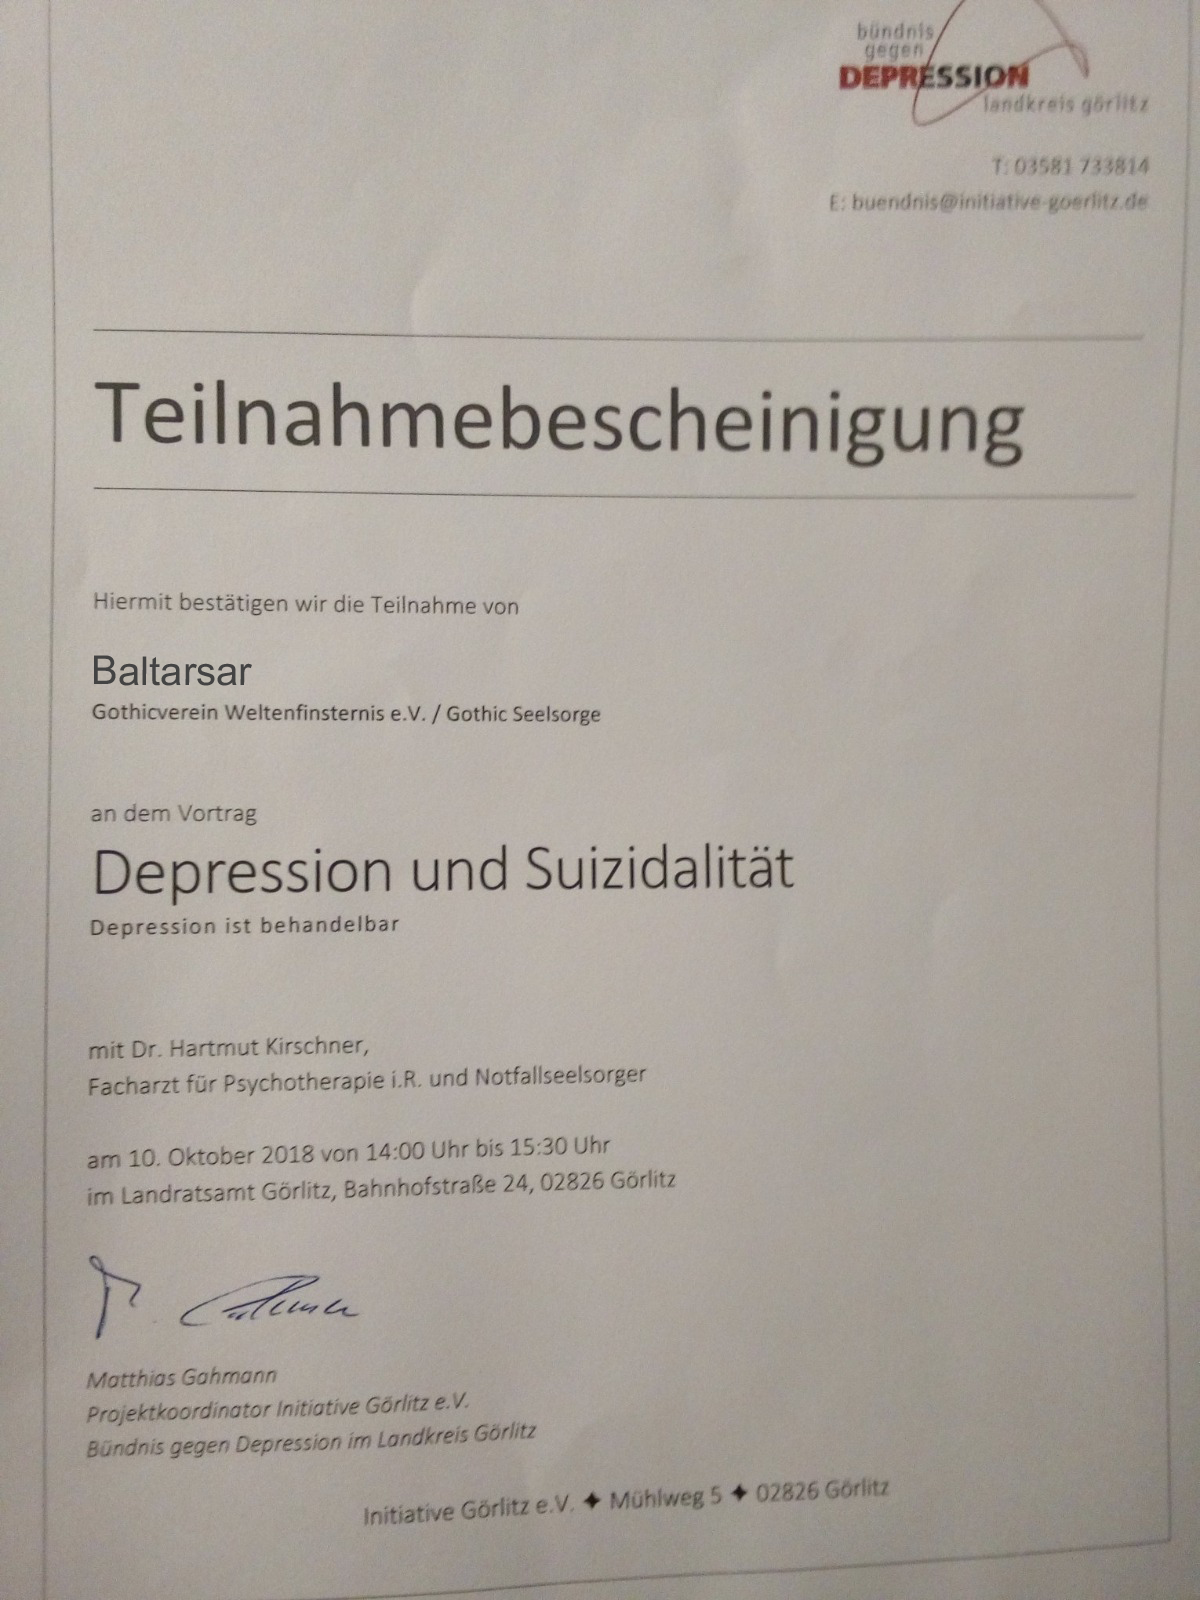 Teilnahmebescheinigung für Baltarsar beim Vortrag Depression und Suizidalität